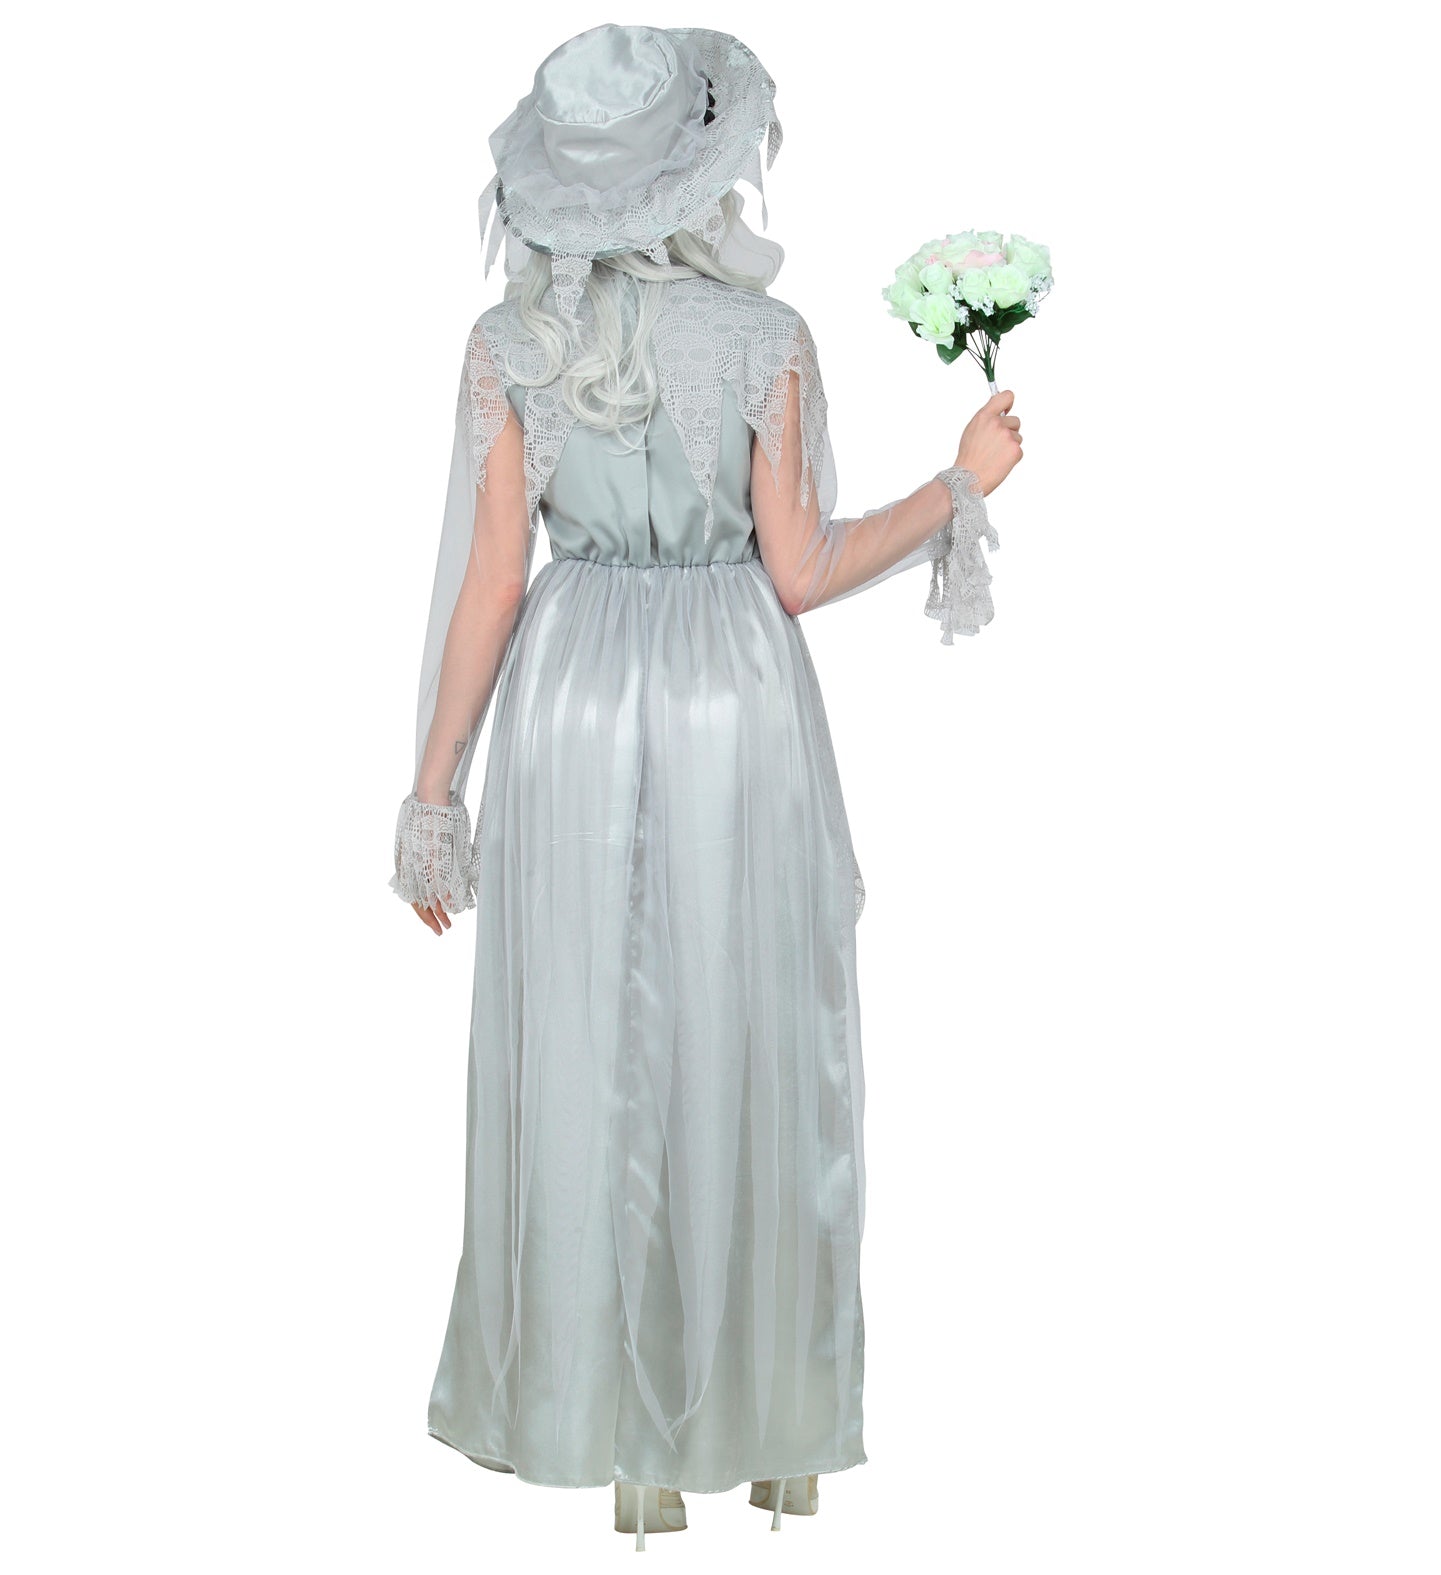 Ghostly Bride Ladies Costume rear